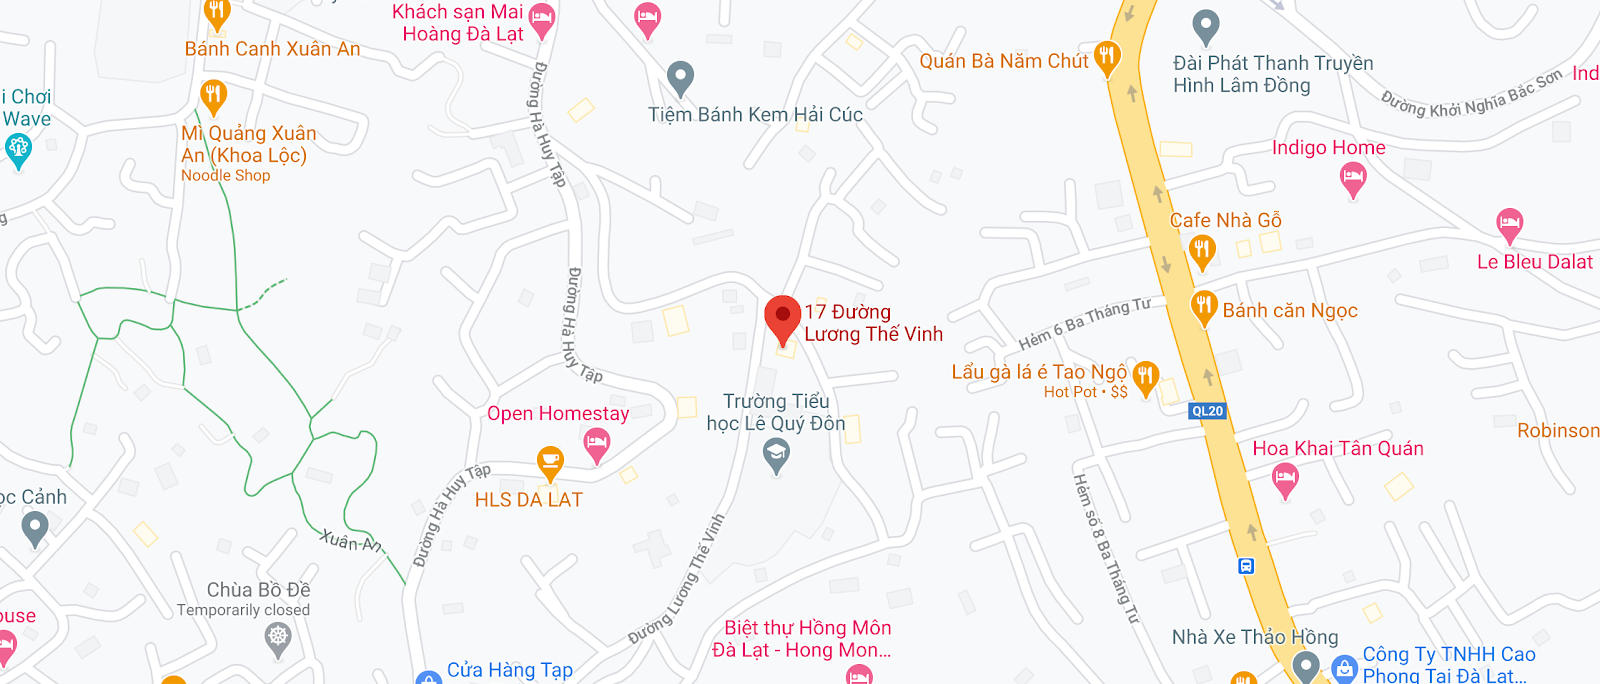 Văn phòng nhà xe Nguyễn Kim tại Đà Lạt